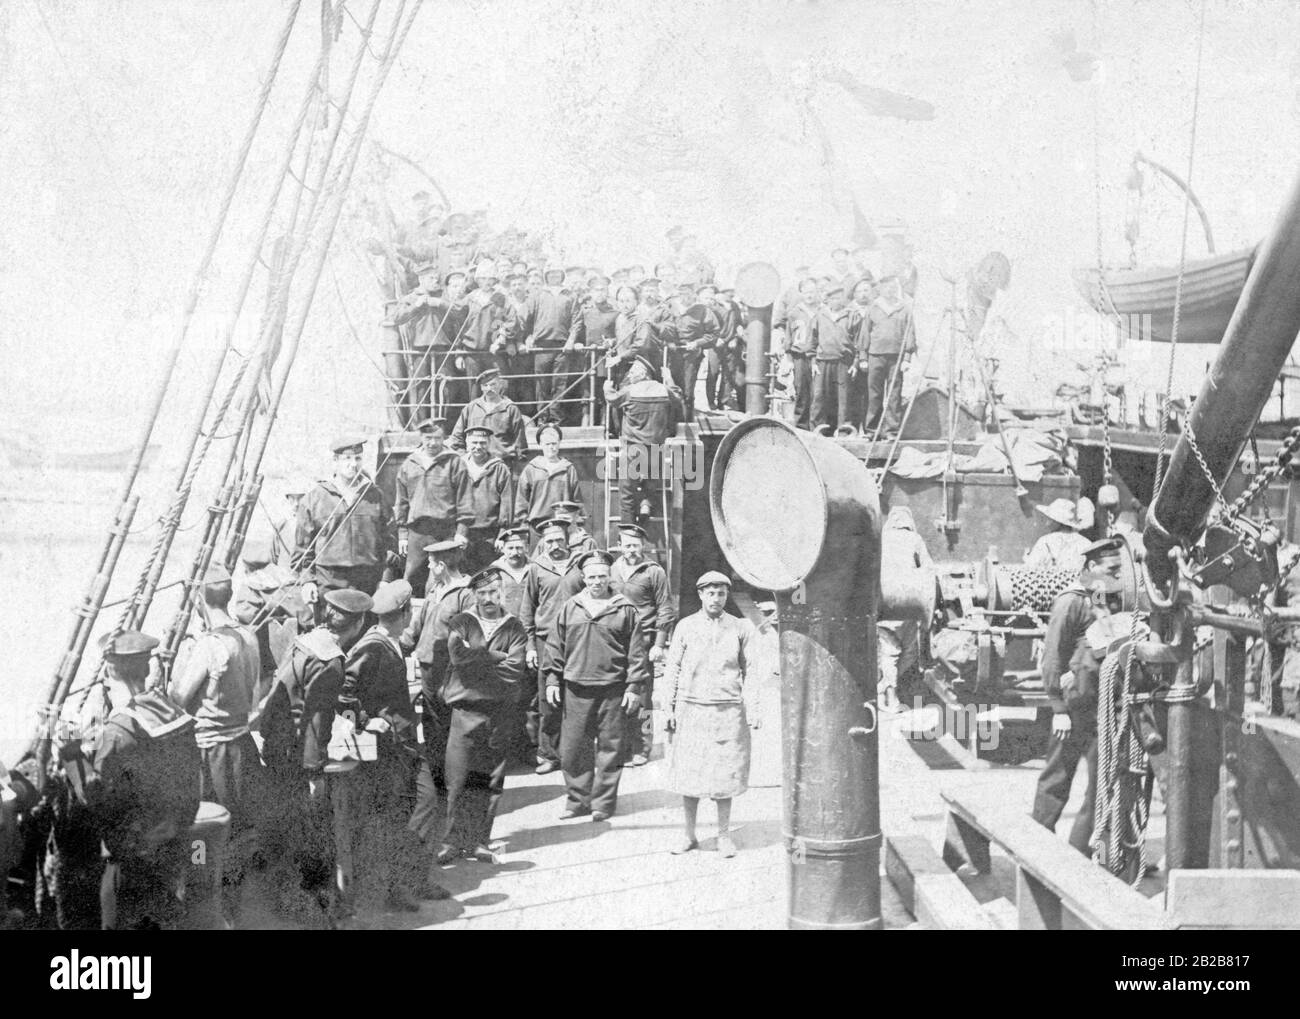 Während des Russisch-Japanischen Krieges: Die Besatzung des russischen Kriegsschiffs "Varyag" in Salonika auf einem französischen Transportschiff vor ihrer Rückkehr nach Odessa. Stockfoto